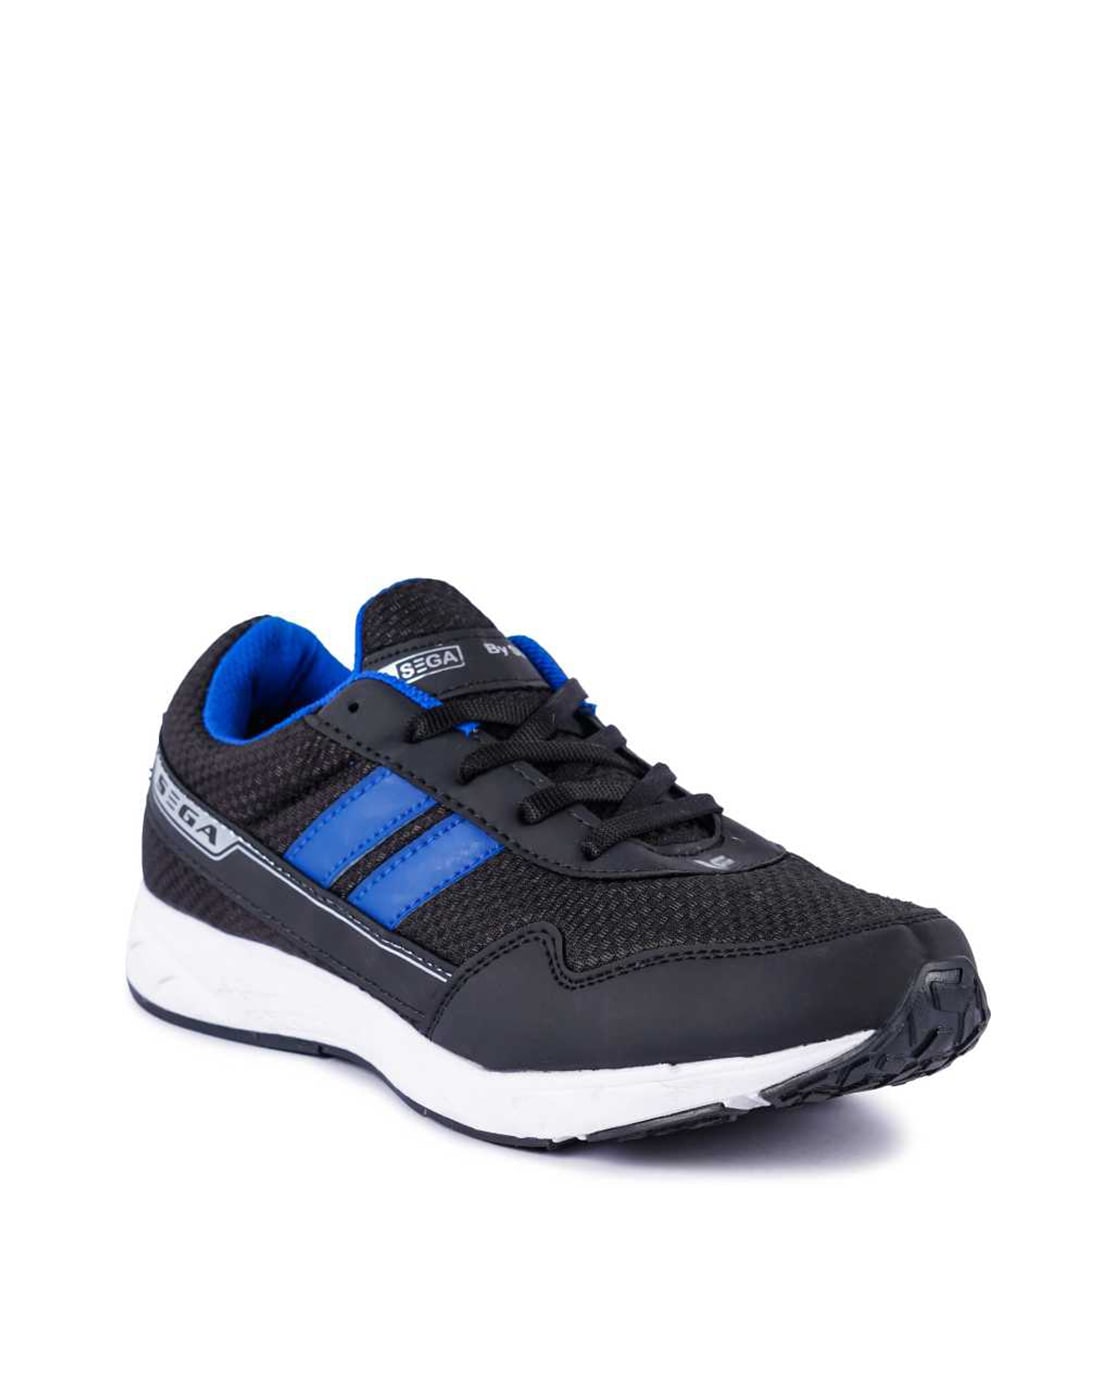 Buy SEGA Men's Rexine Original Edge Jogging/Multipurpose Shoes (Navy, 9 UK  ) at Amazon.in